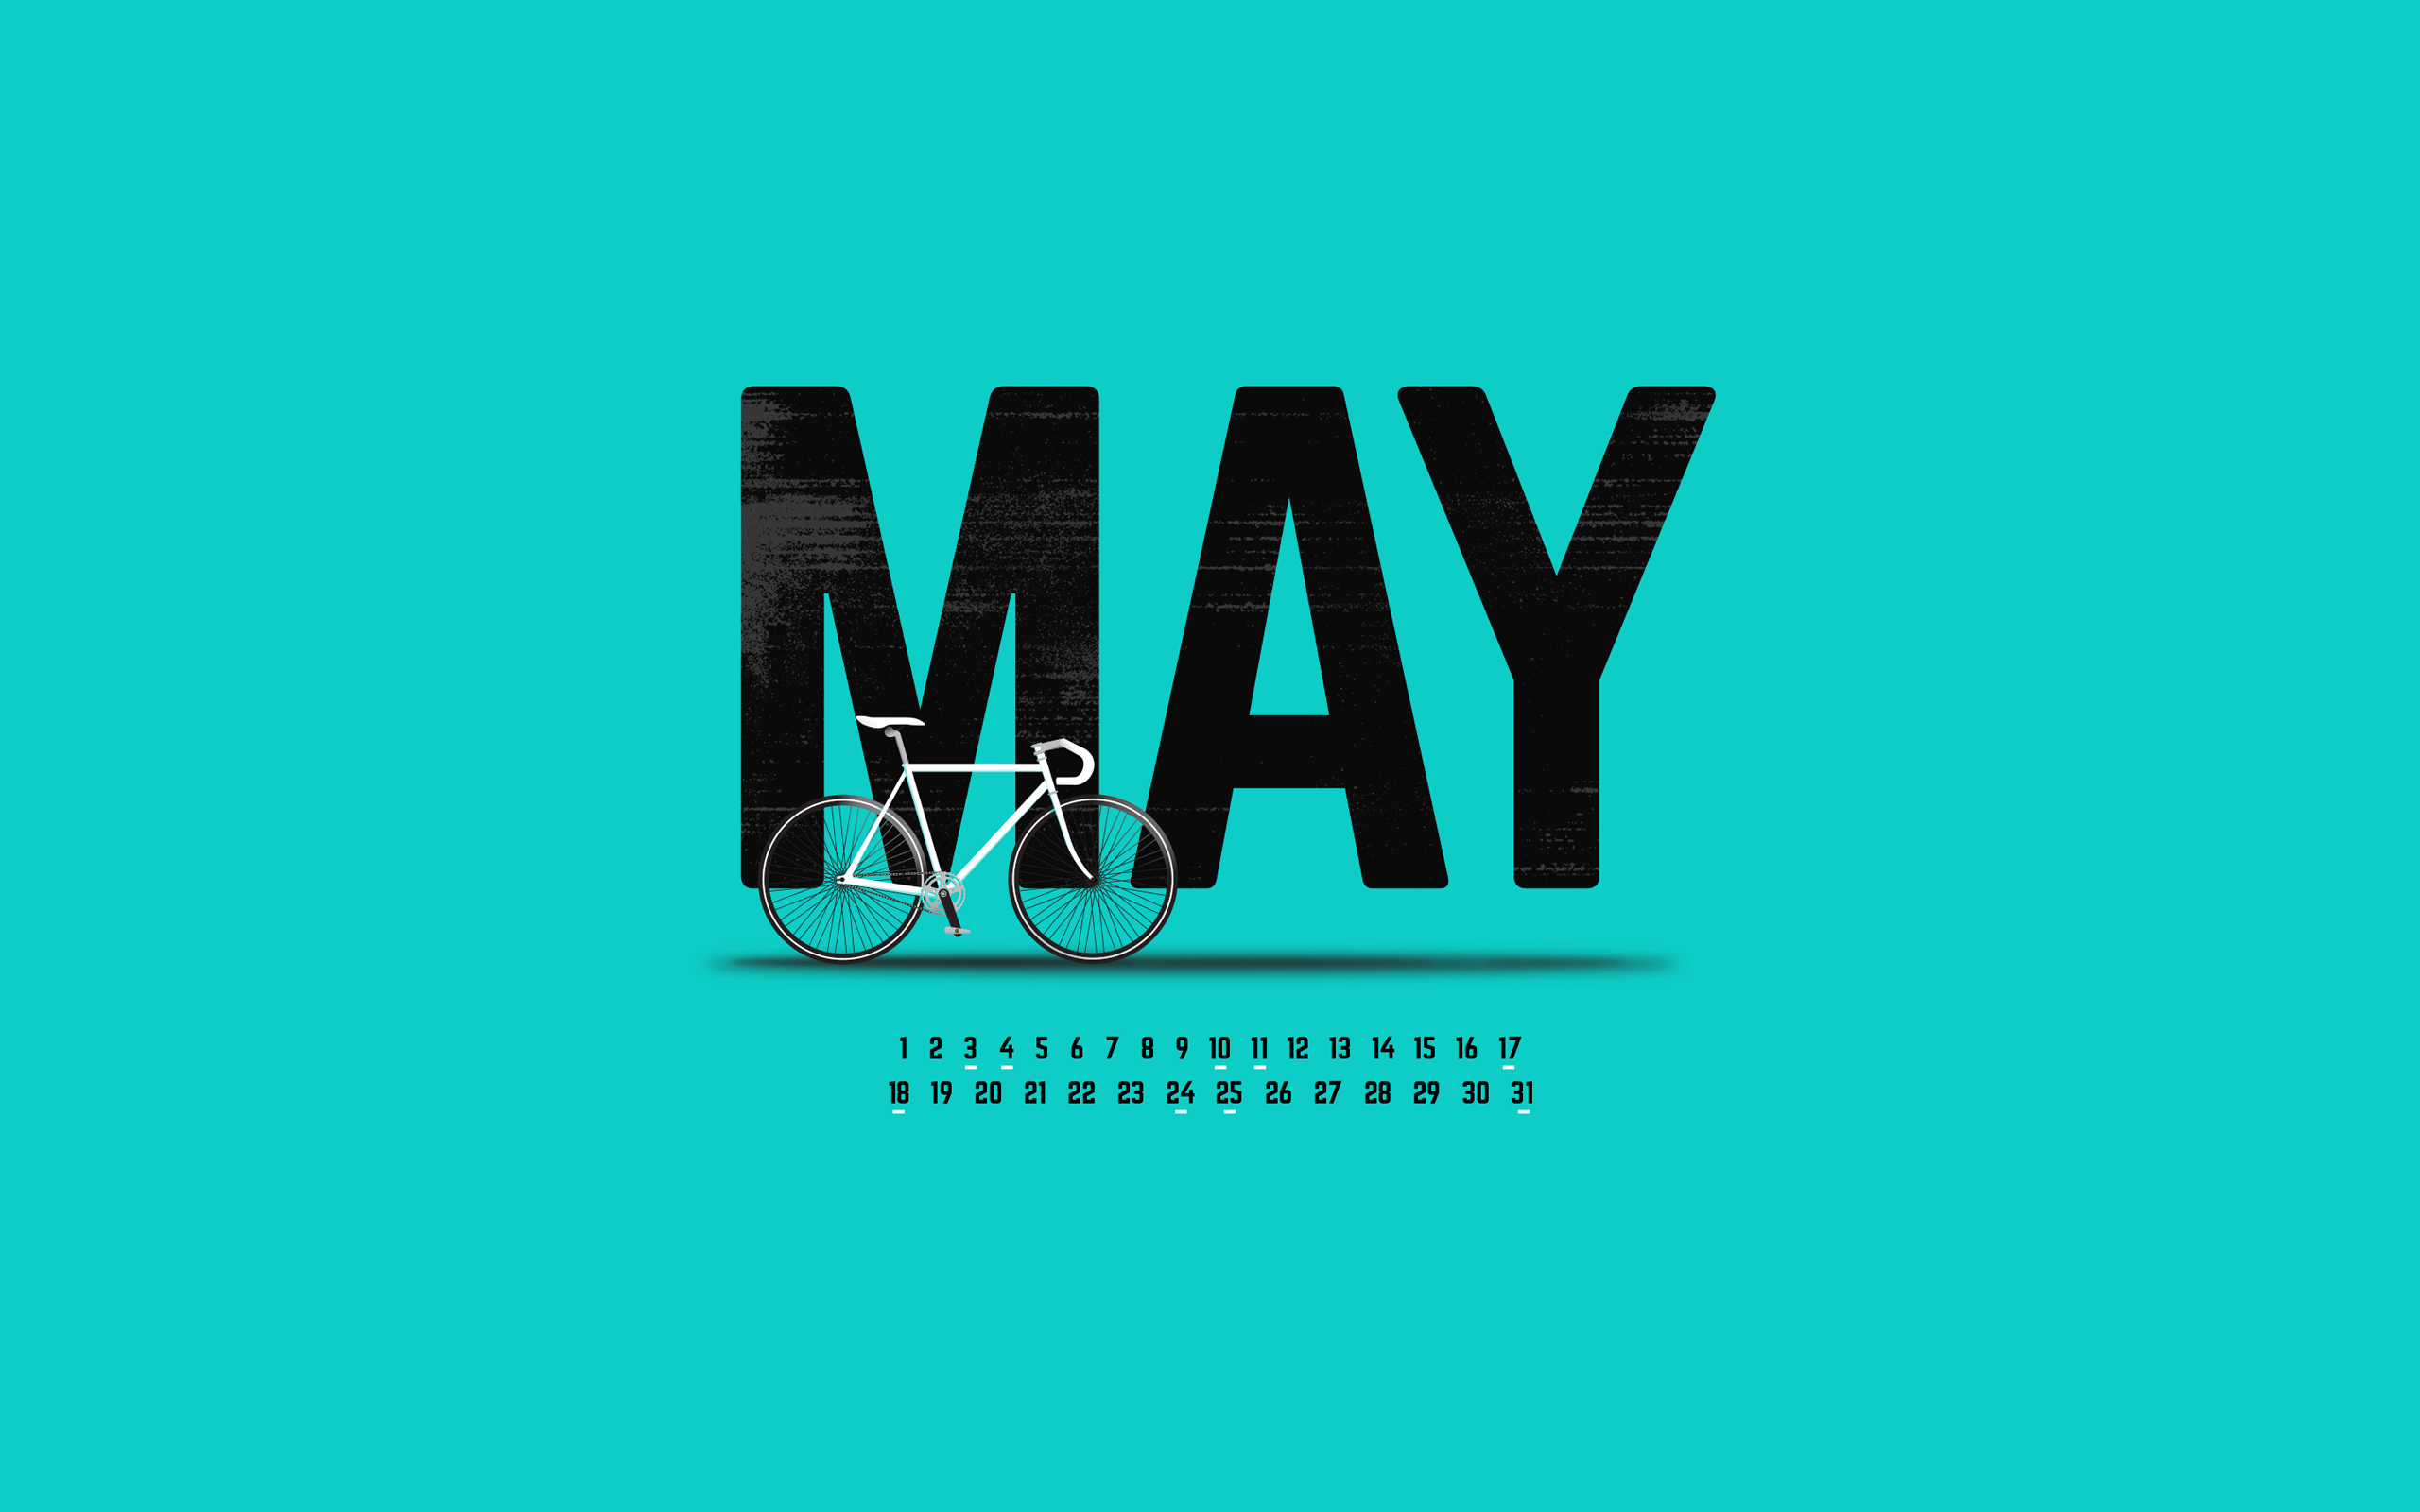 Free download May 2014 Mobile and Desktop Calendar Wallpaper [2560x1600